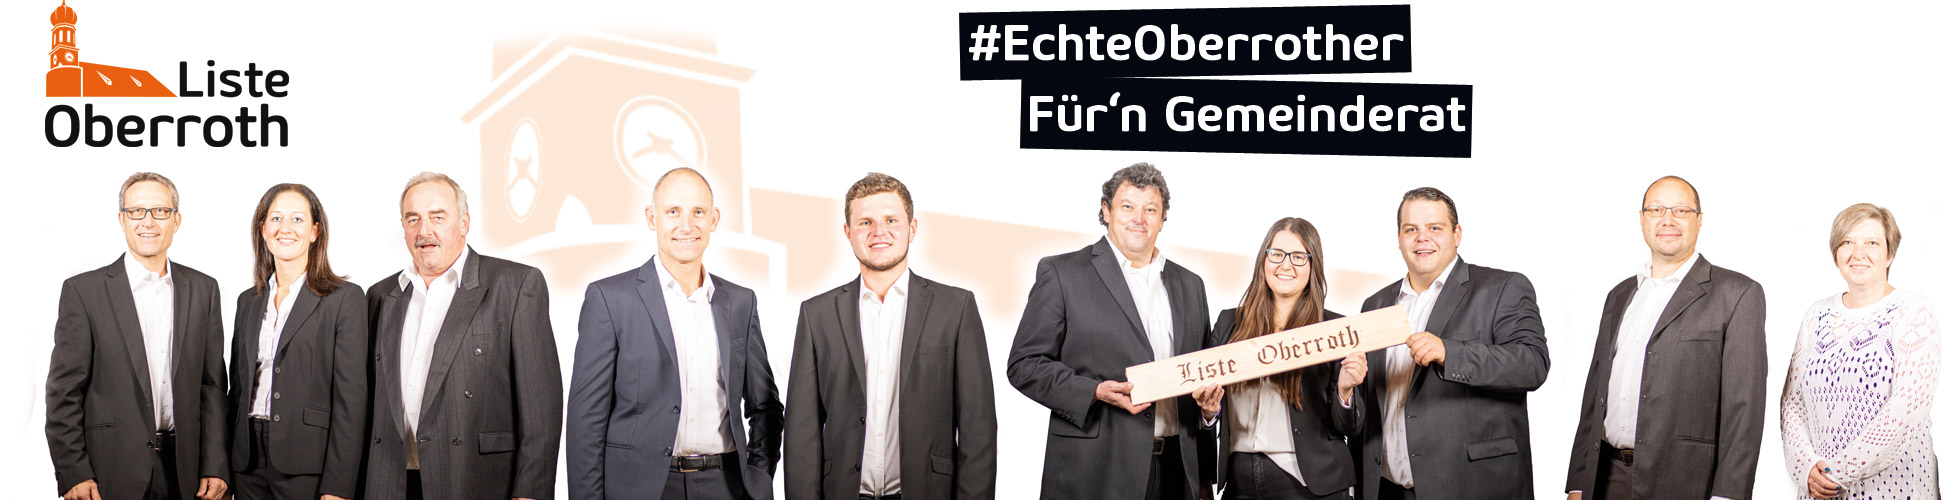 Liste Oberroth - Echte Oberrother für den Gemeinderat Schwabhausen!